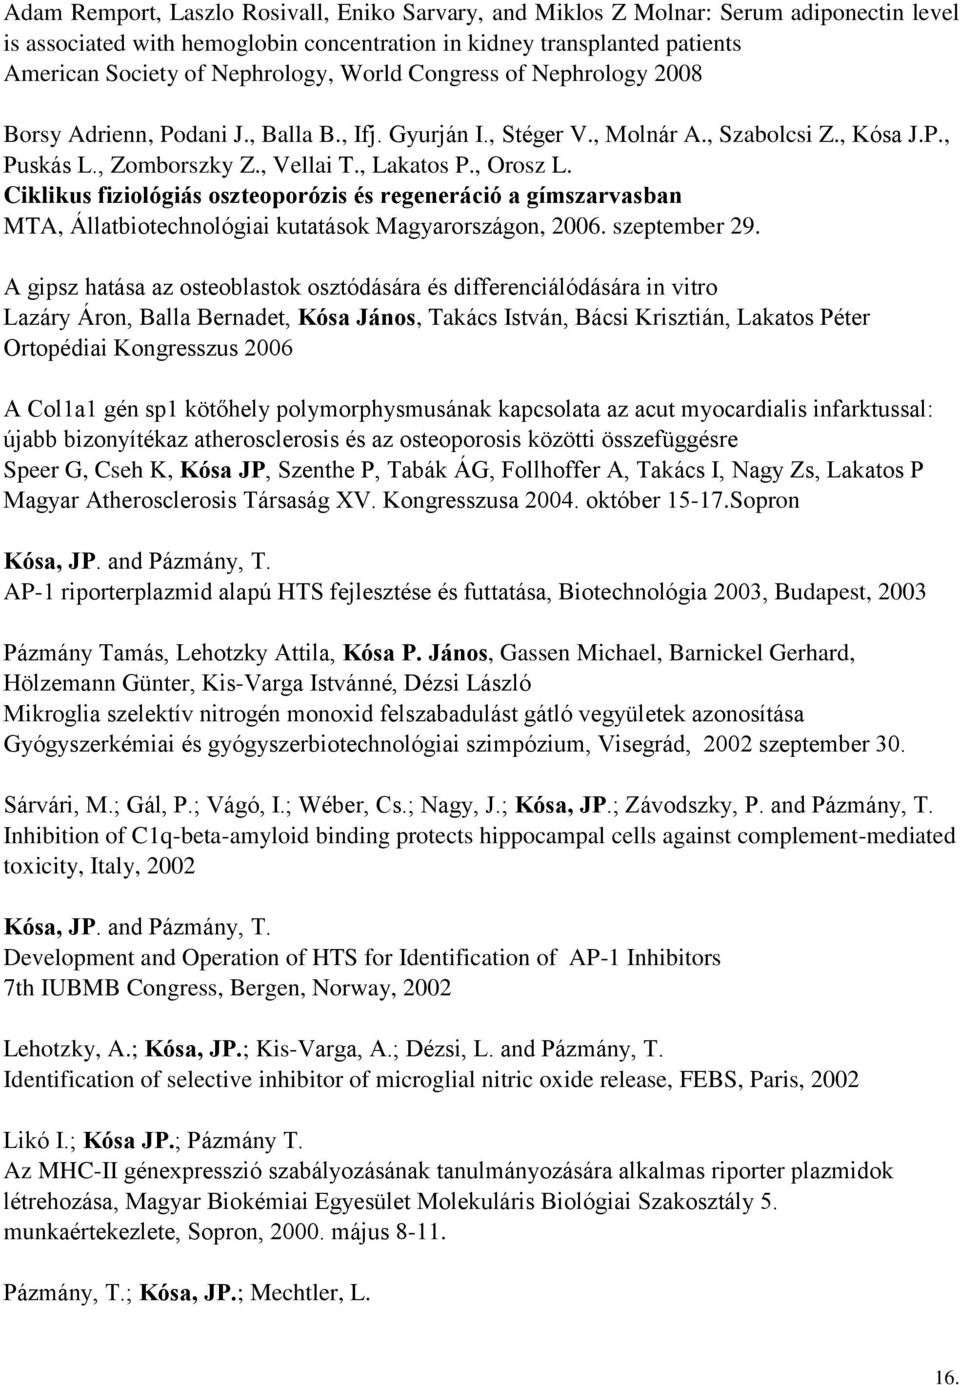 Ciklikus fiziológiás oszteoporózis és regeneráció a gímszarvasban MTA, Állatbiotechnológiai kutatások Magyarországon, 2006. szeptember 29.